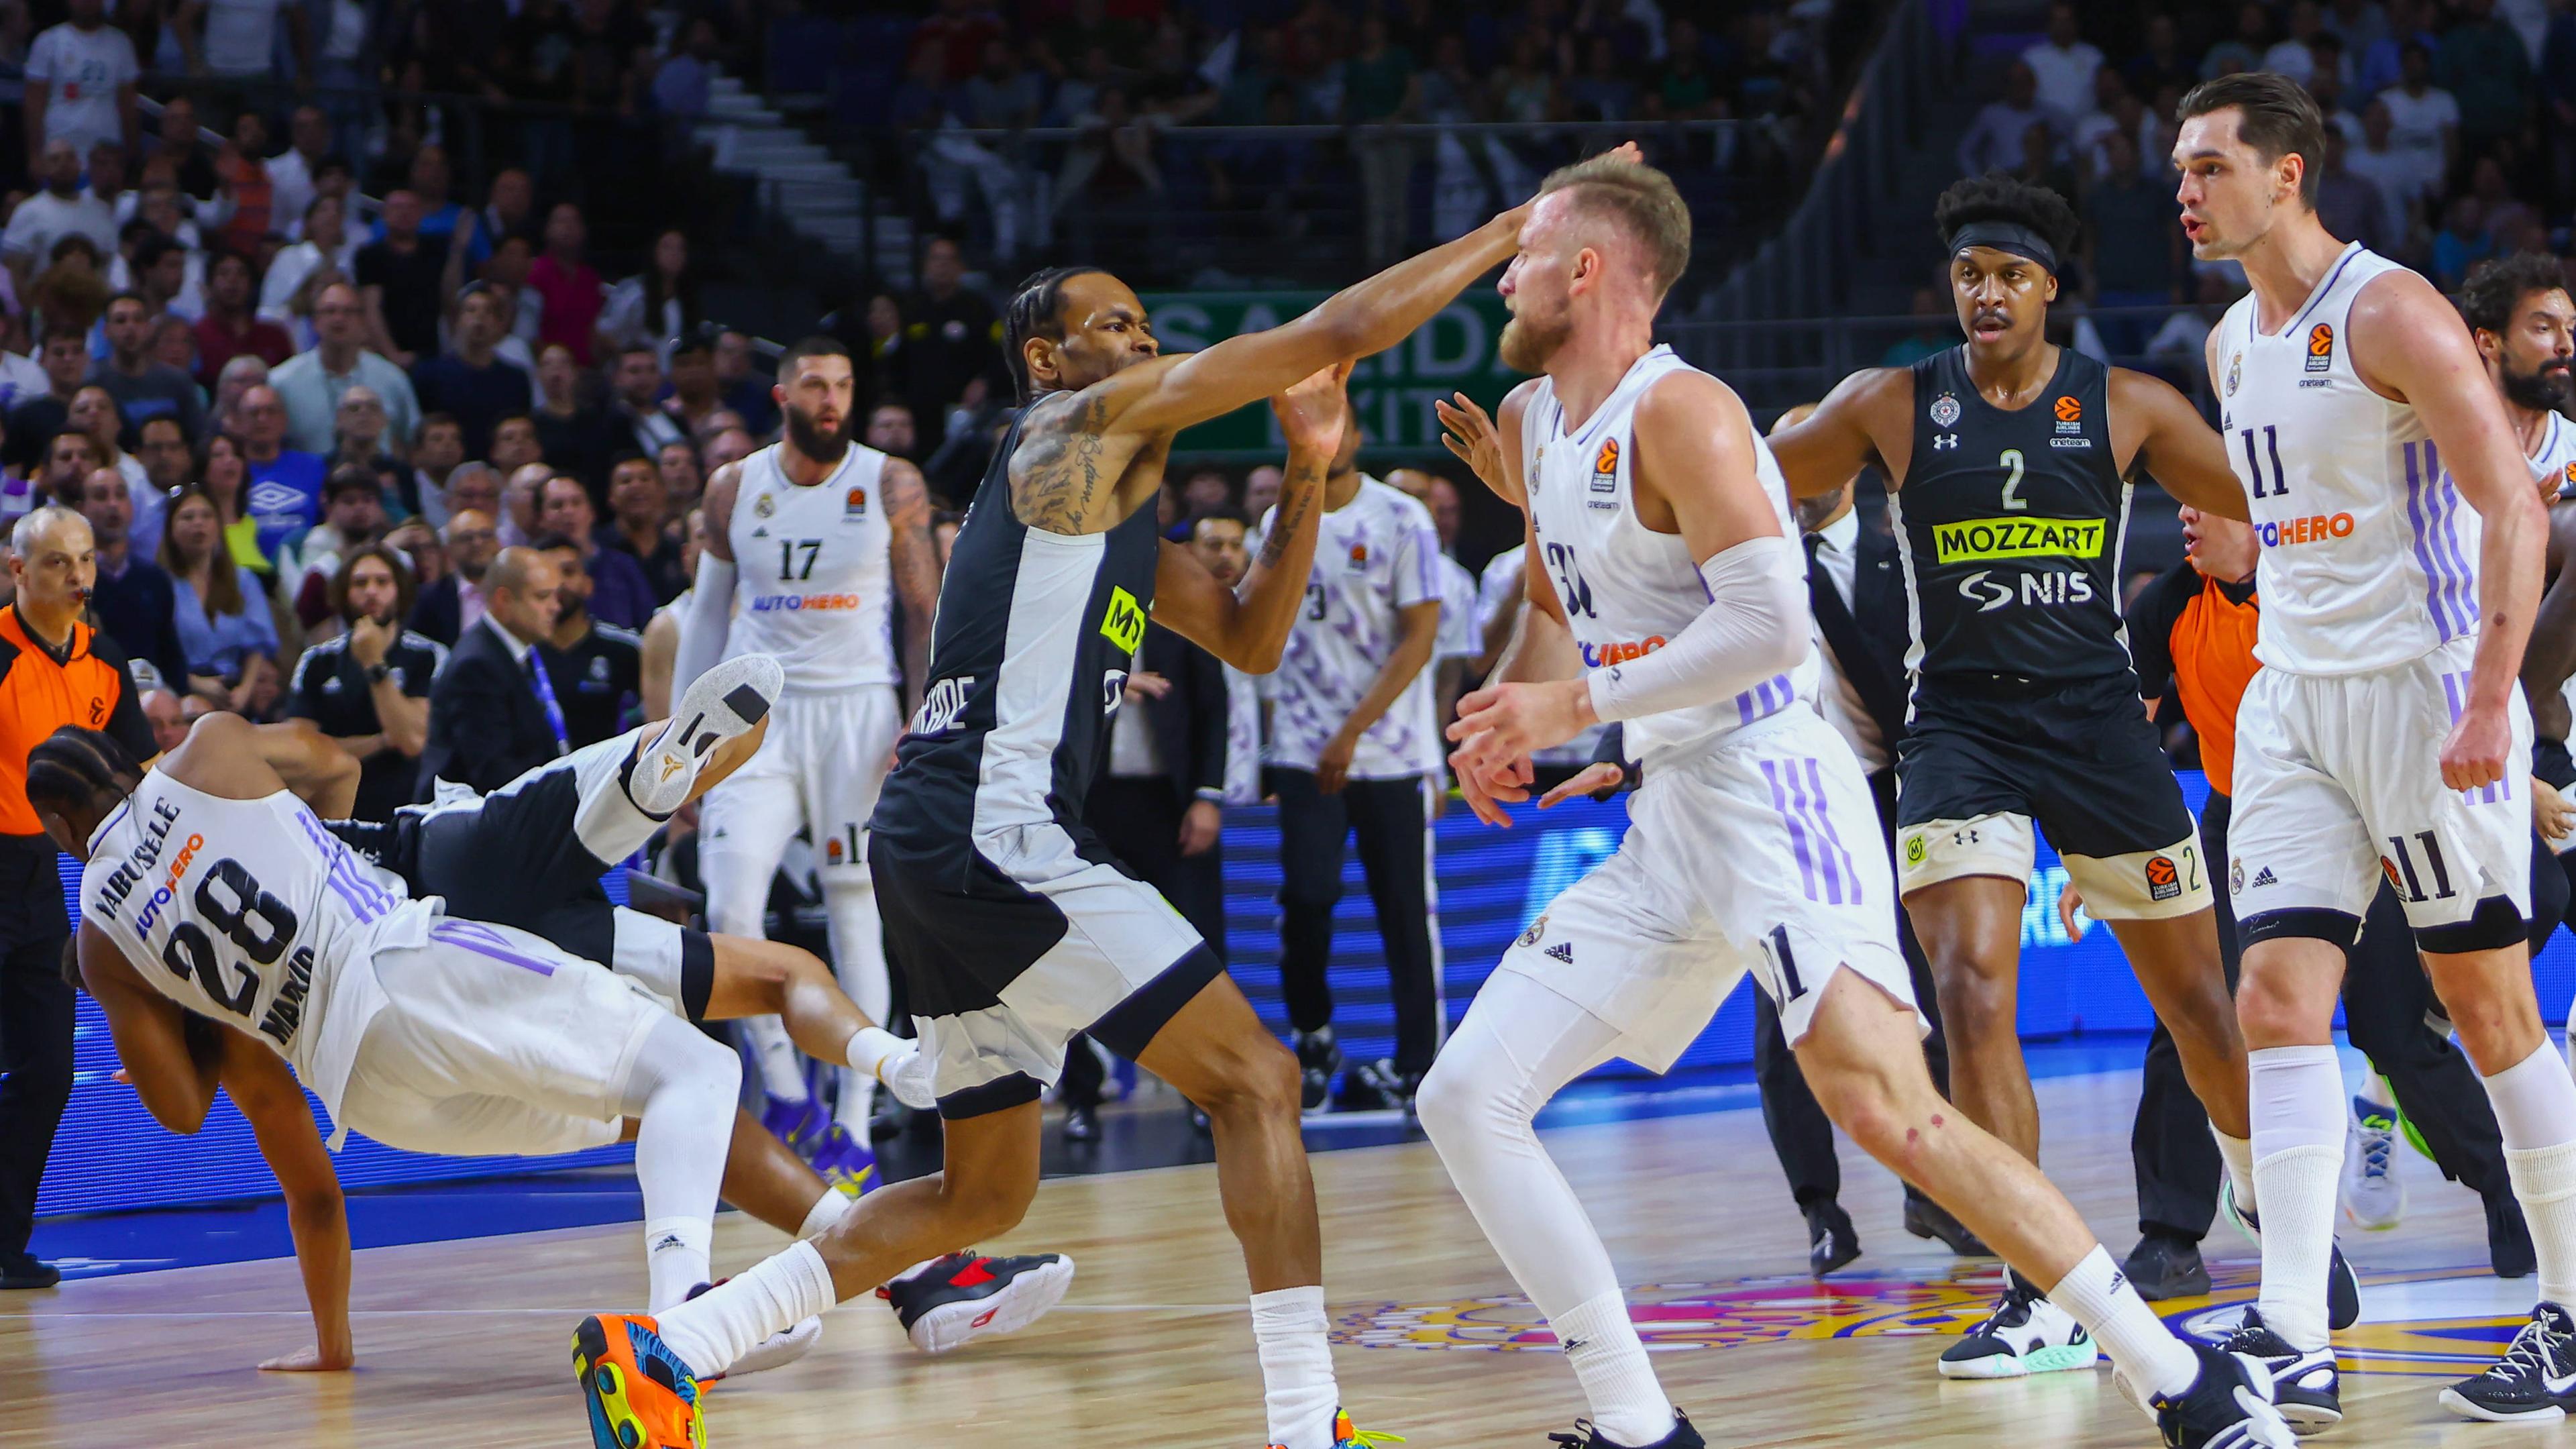 Basketballspiel zwischen Madrid und Belgrad eskaliert